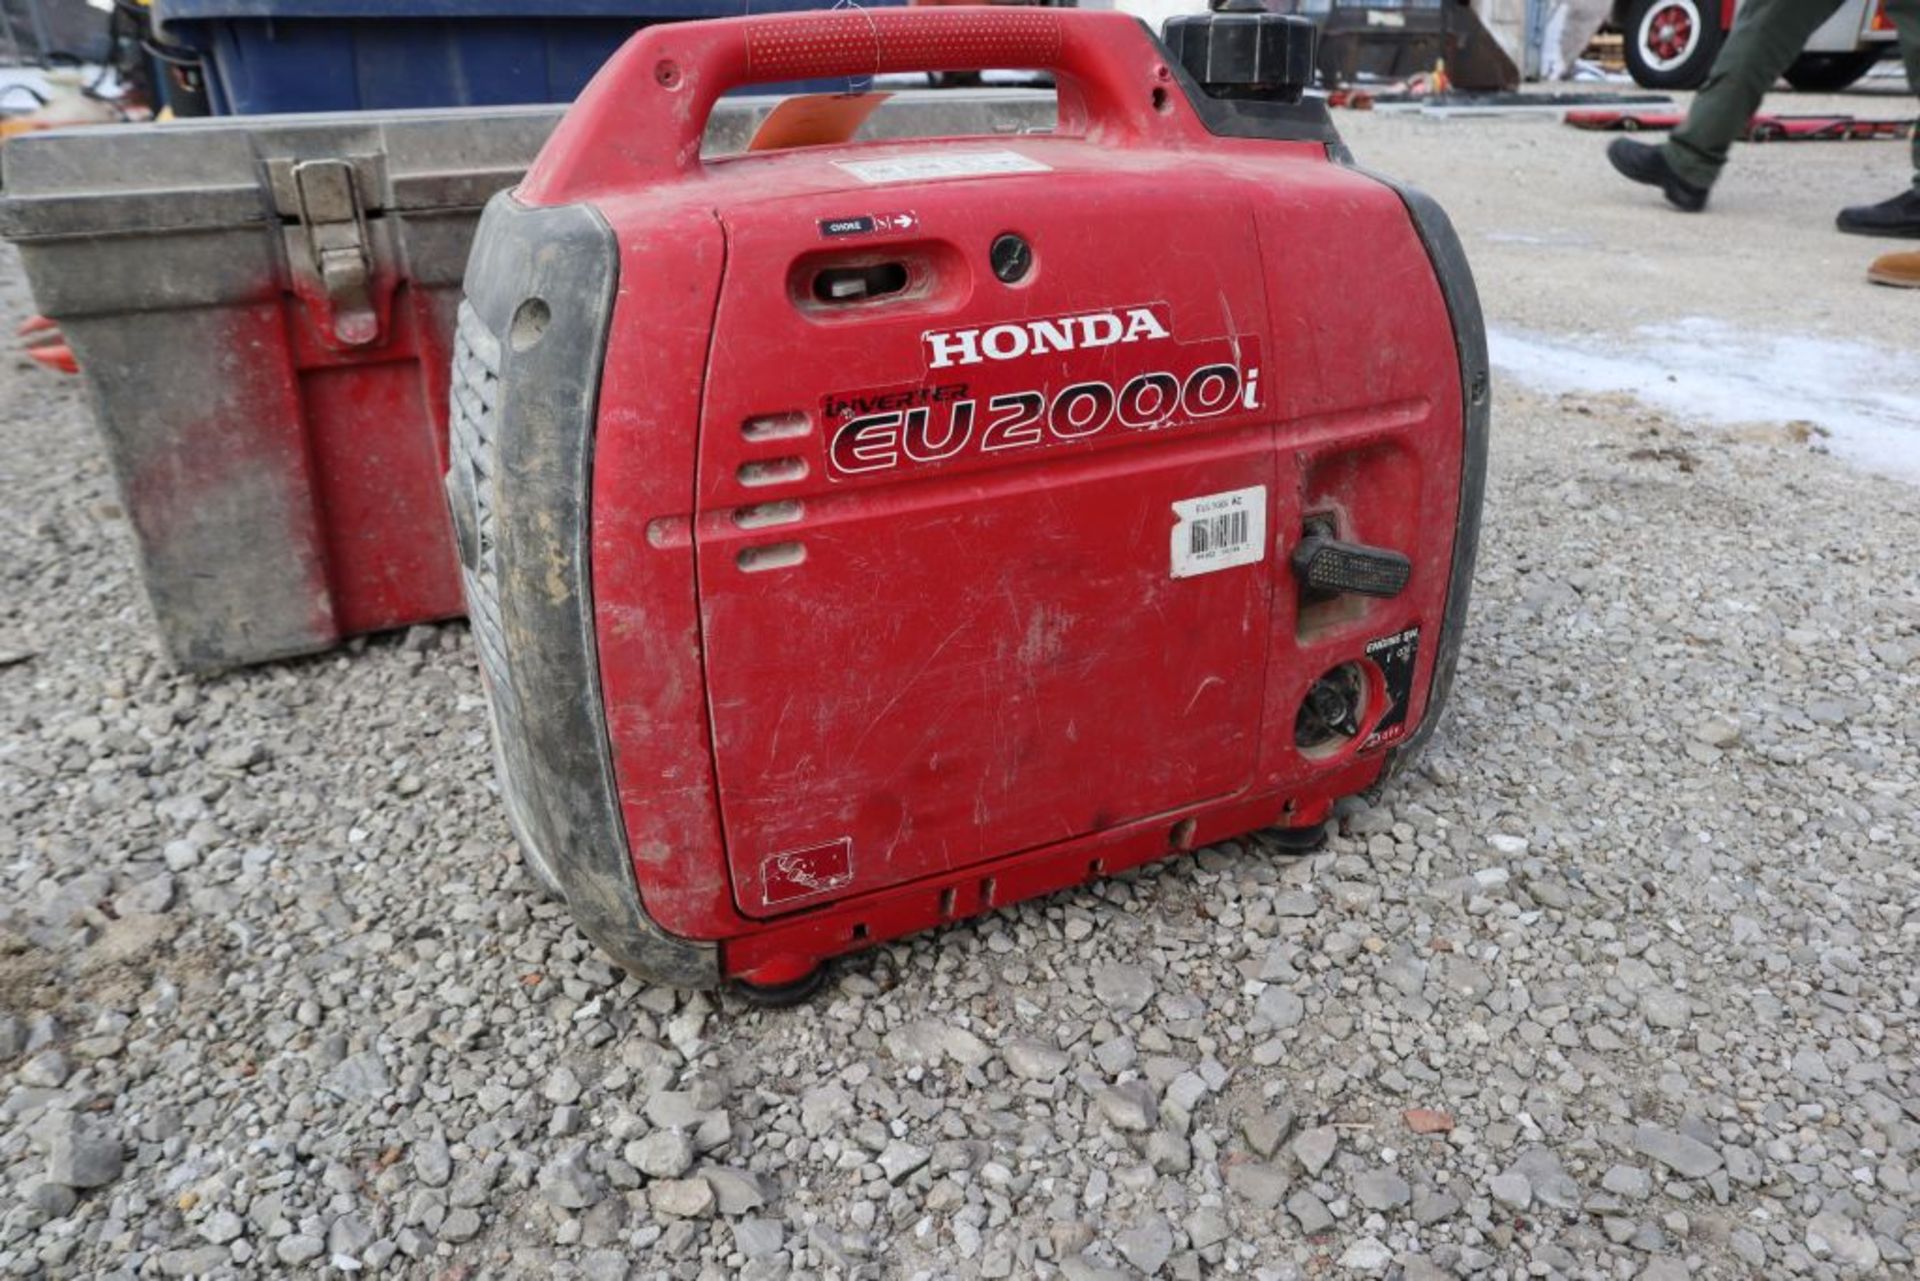 Honda EU2000 generator.